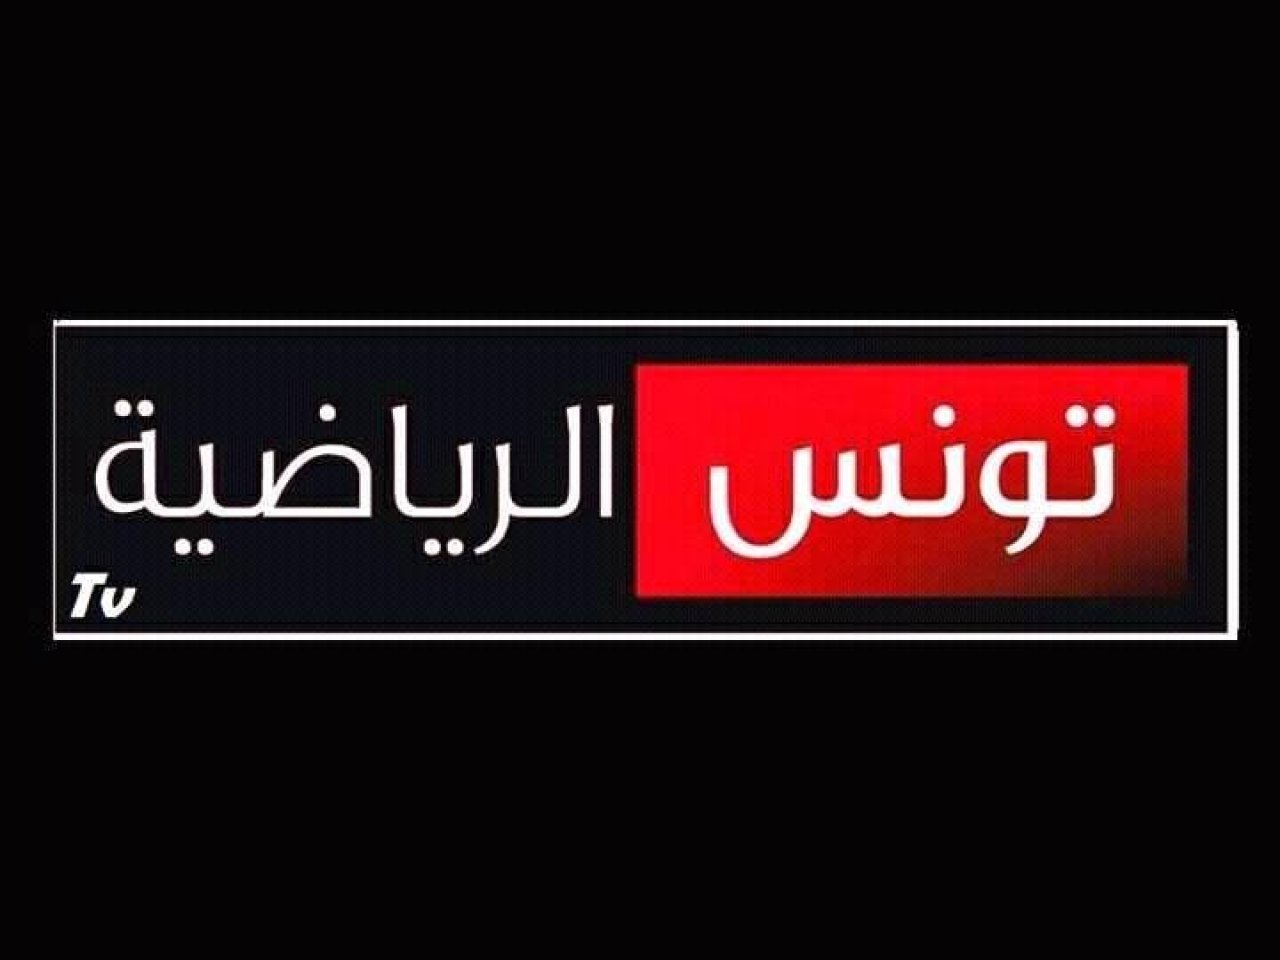 تردد قناة الوطنية 1 التونسية الناقلة لمباراة الزمالك والترجي اليوم الجمعة